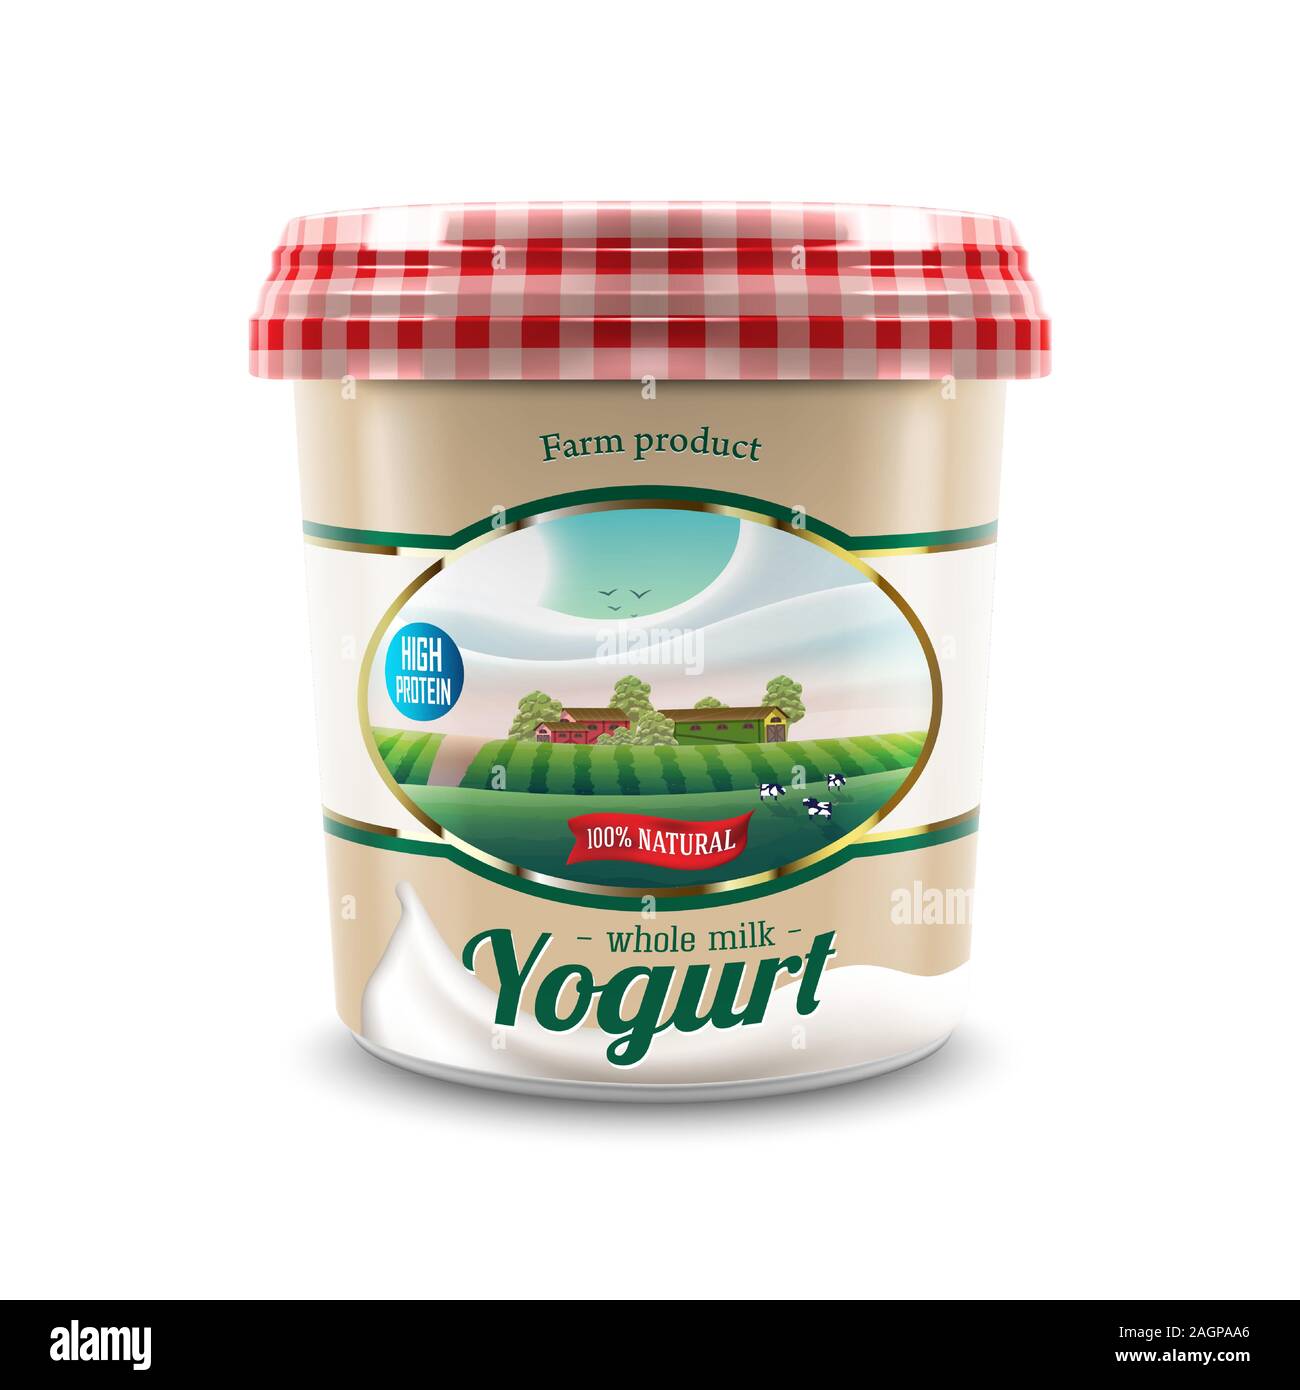 Nouvelle conception de l'emballage de yogourt avec étiquette rurale agricole avec les arbres et les vaches, vector illustration pour yogourt ferme de produits de marque ou design publicitaire Illustration de Vecteur